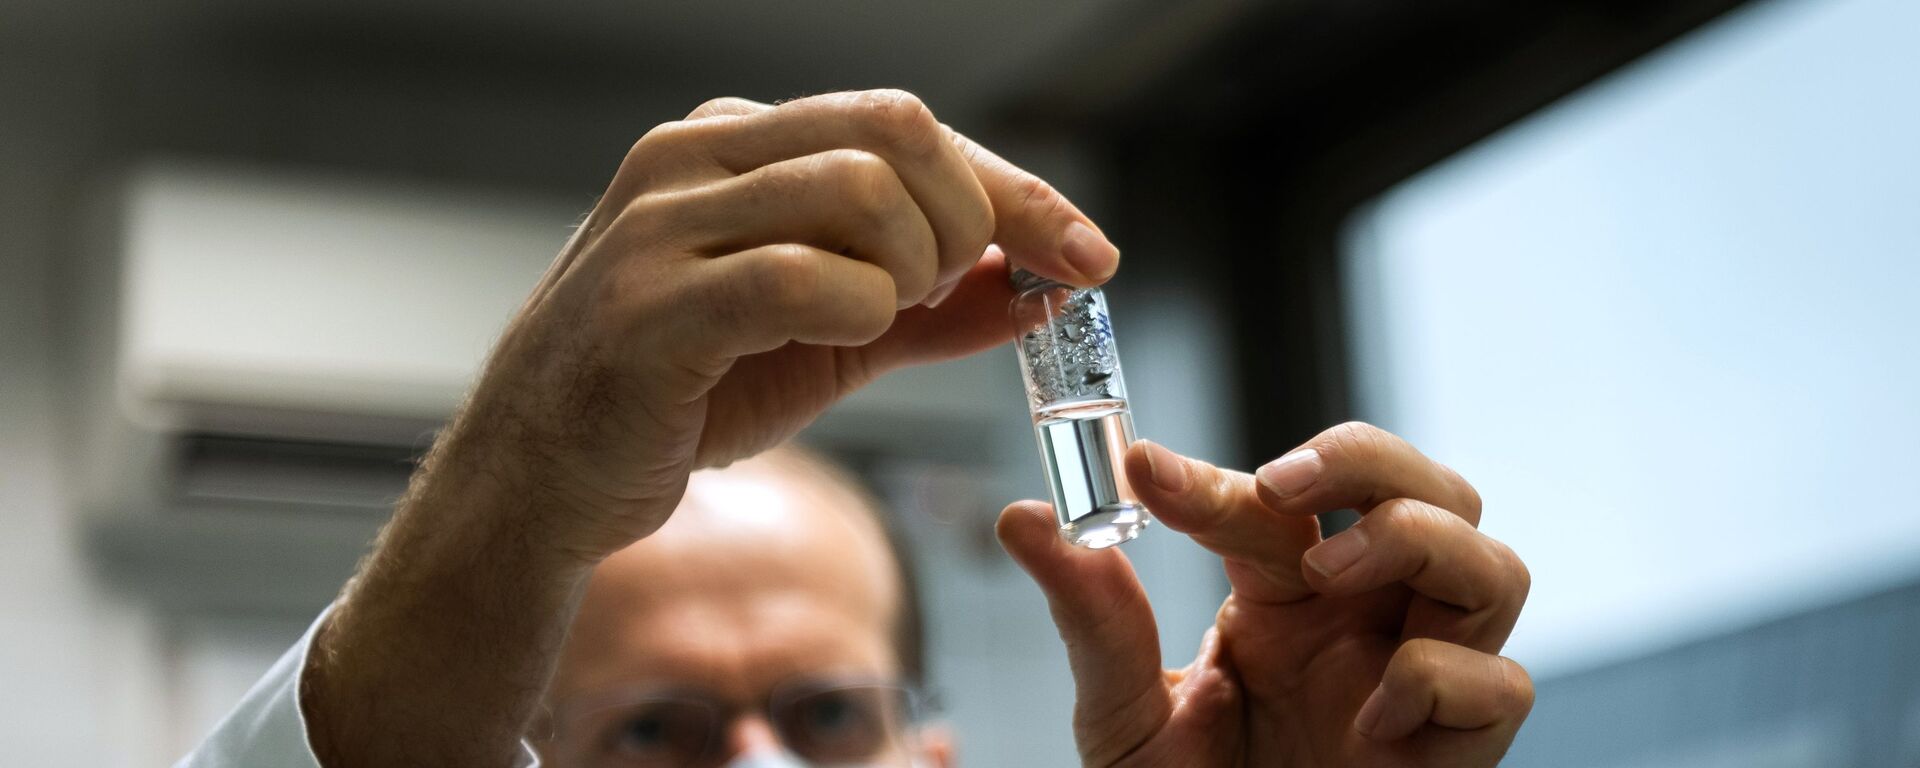 Российская вакцина от коронавируса Спутник V доставлена в Венгрию для клинических исследований - Sputnik Таджикистан, 1920, 06.03.2021